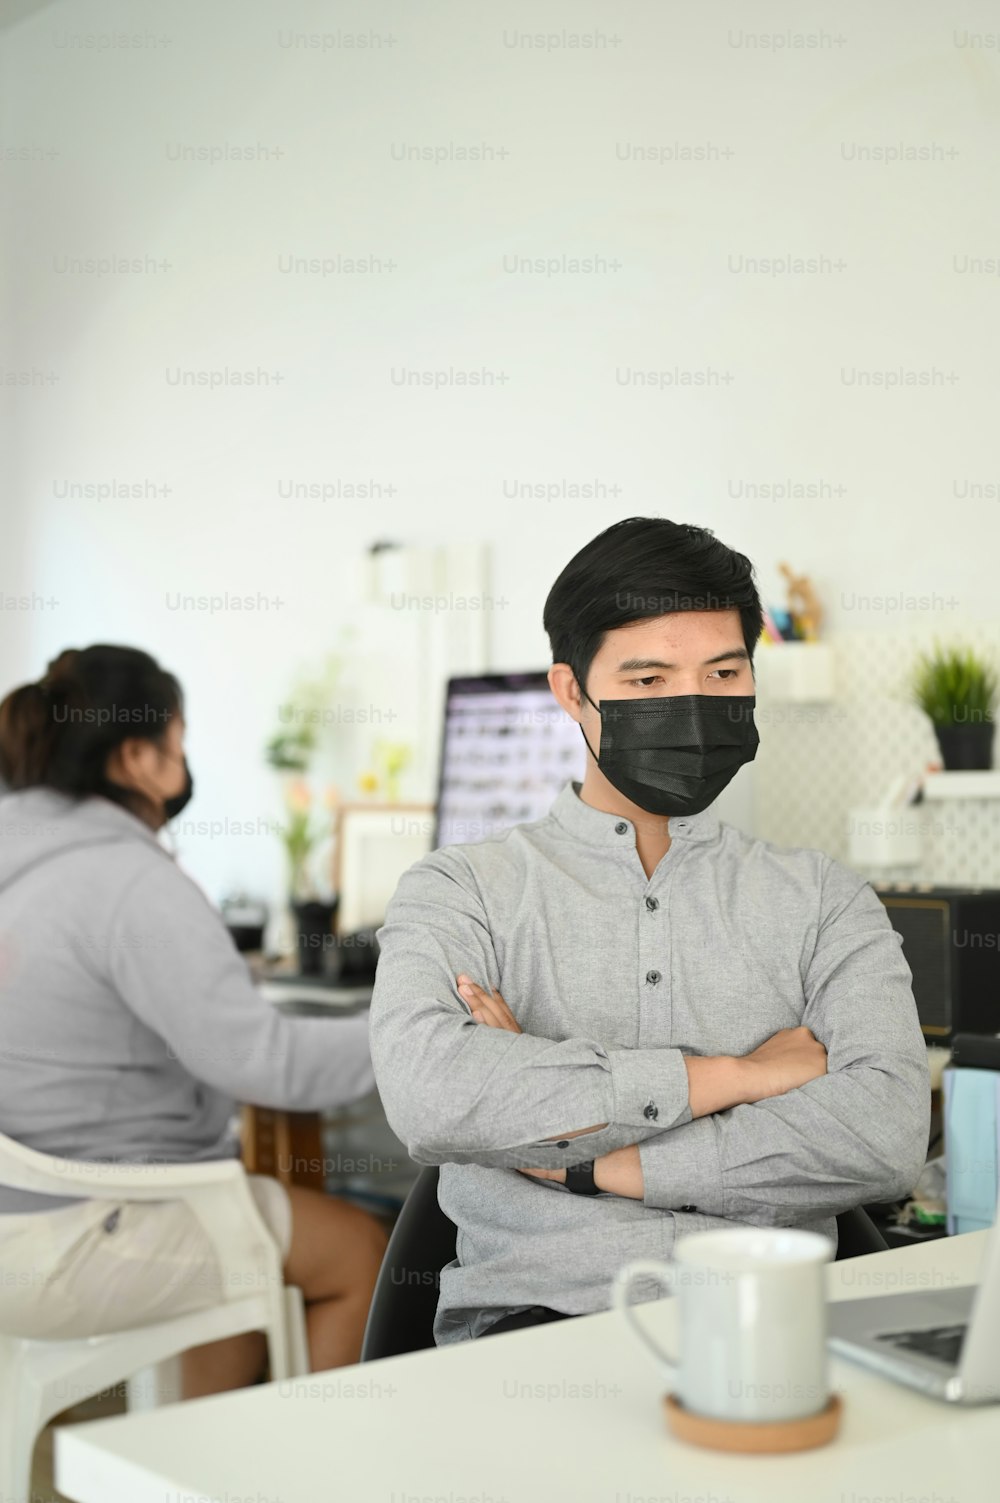 Zwei Büroangestellte arbeiten und tragen eine Maske zum Schutz vor Covid19 oder der Coronavirus-Krankheit.